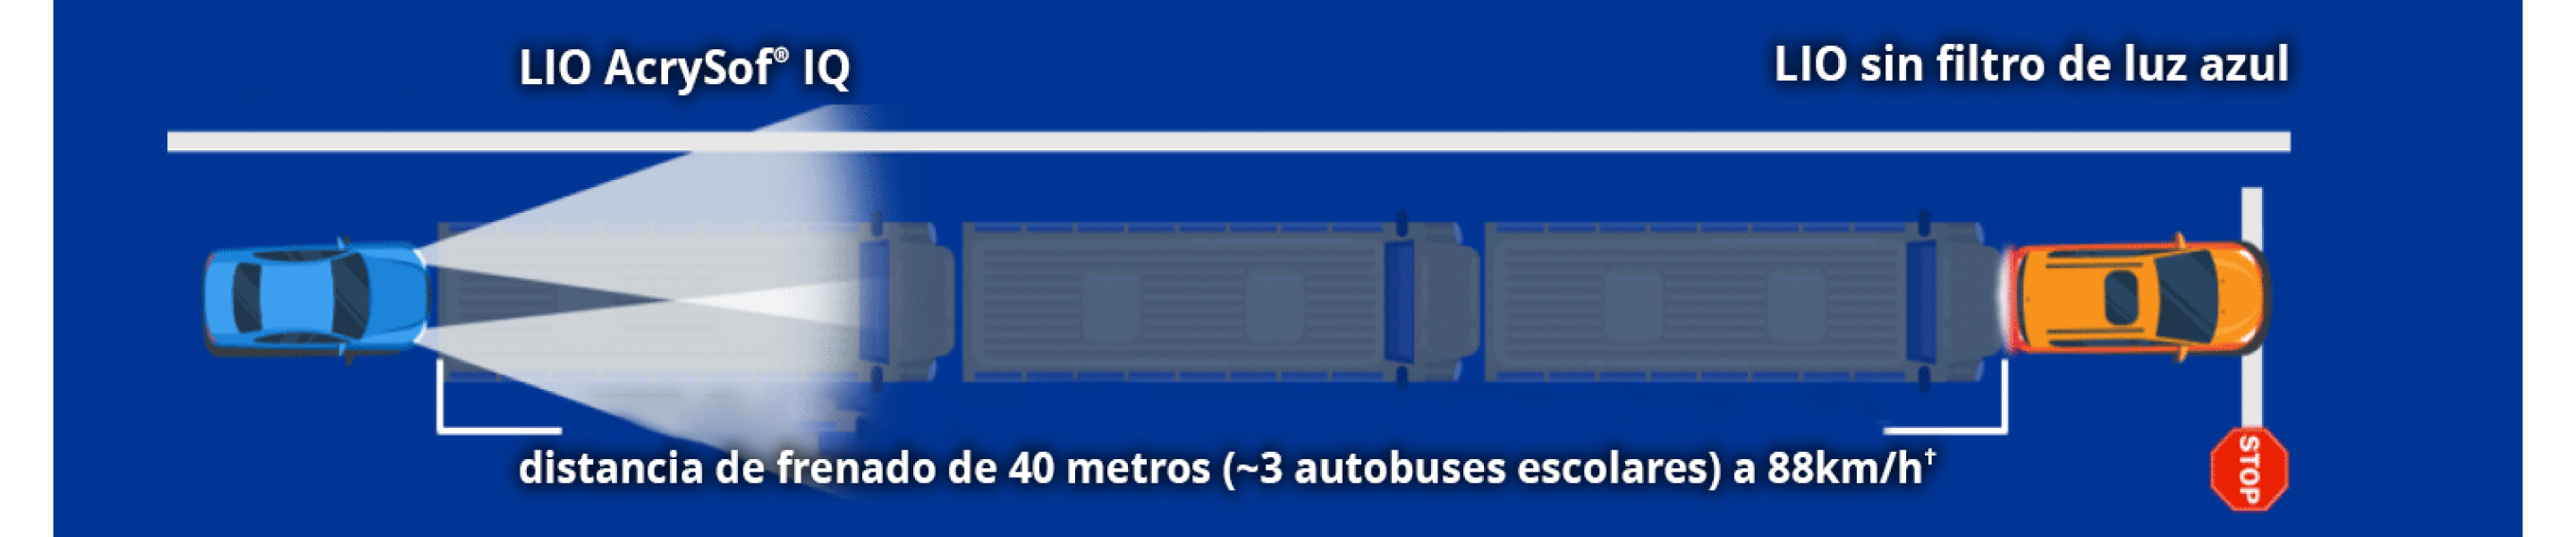 Ilustración que muestra un marco etiquetado como LIO AcrySof y un coche etiquetado como LIO sin filtro de luz azul. El texto dice: “distancia de frenado a 88 km/h de +40 metros (~3 autobuses).”